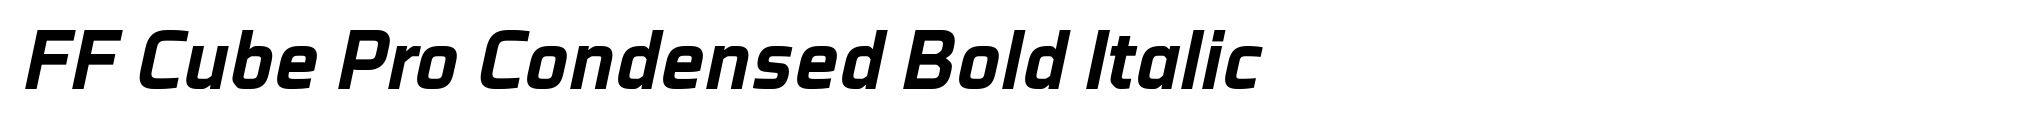 FF Cube Pro Condensed Bold Italic image